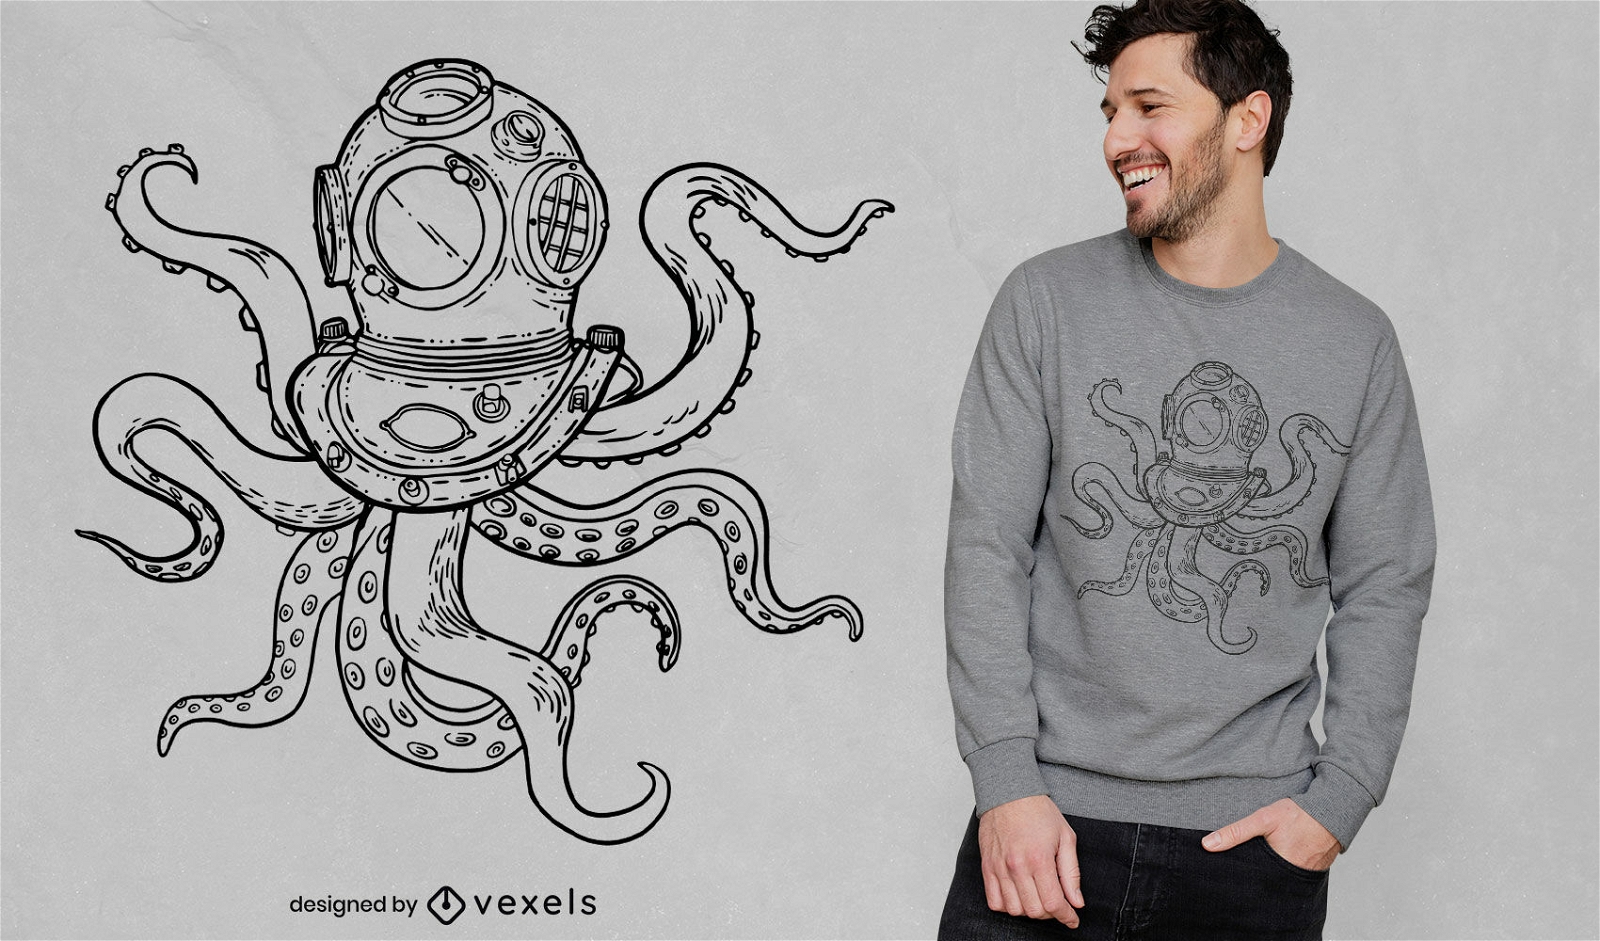 Scuba diving octopus t-shirt design